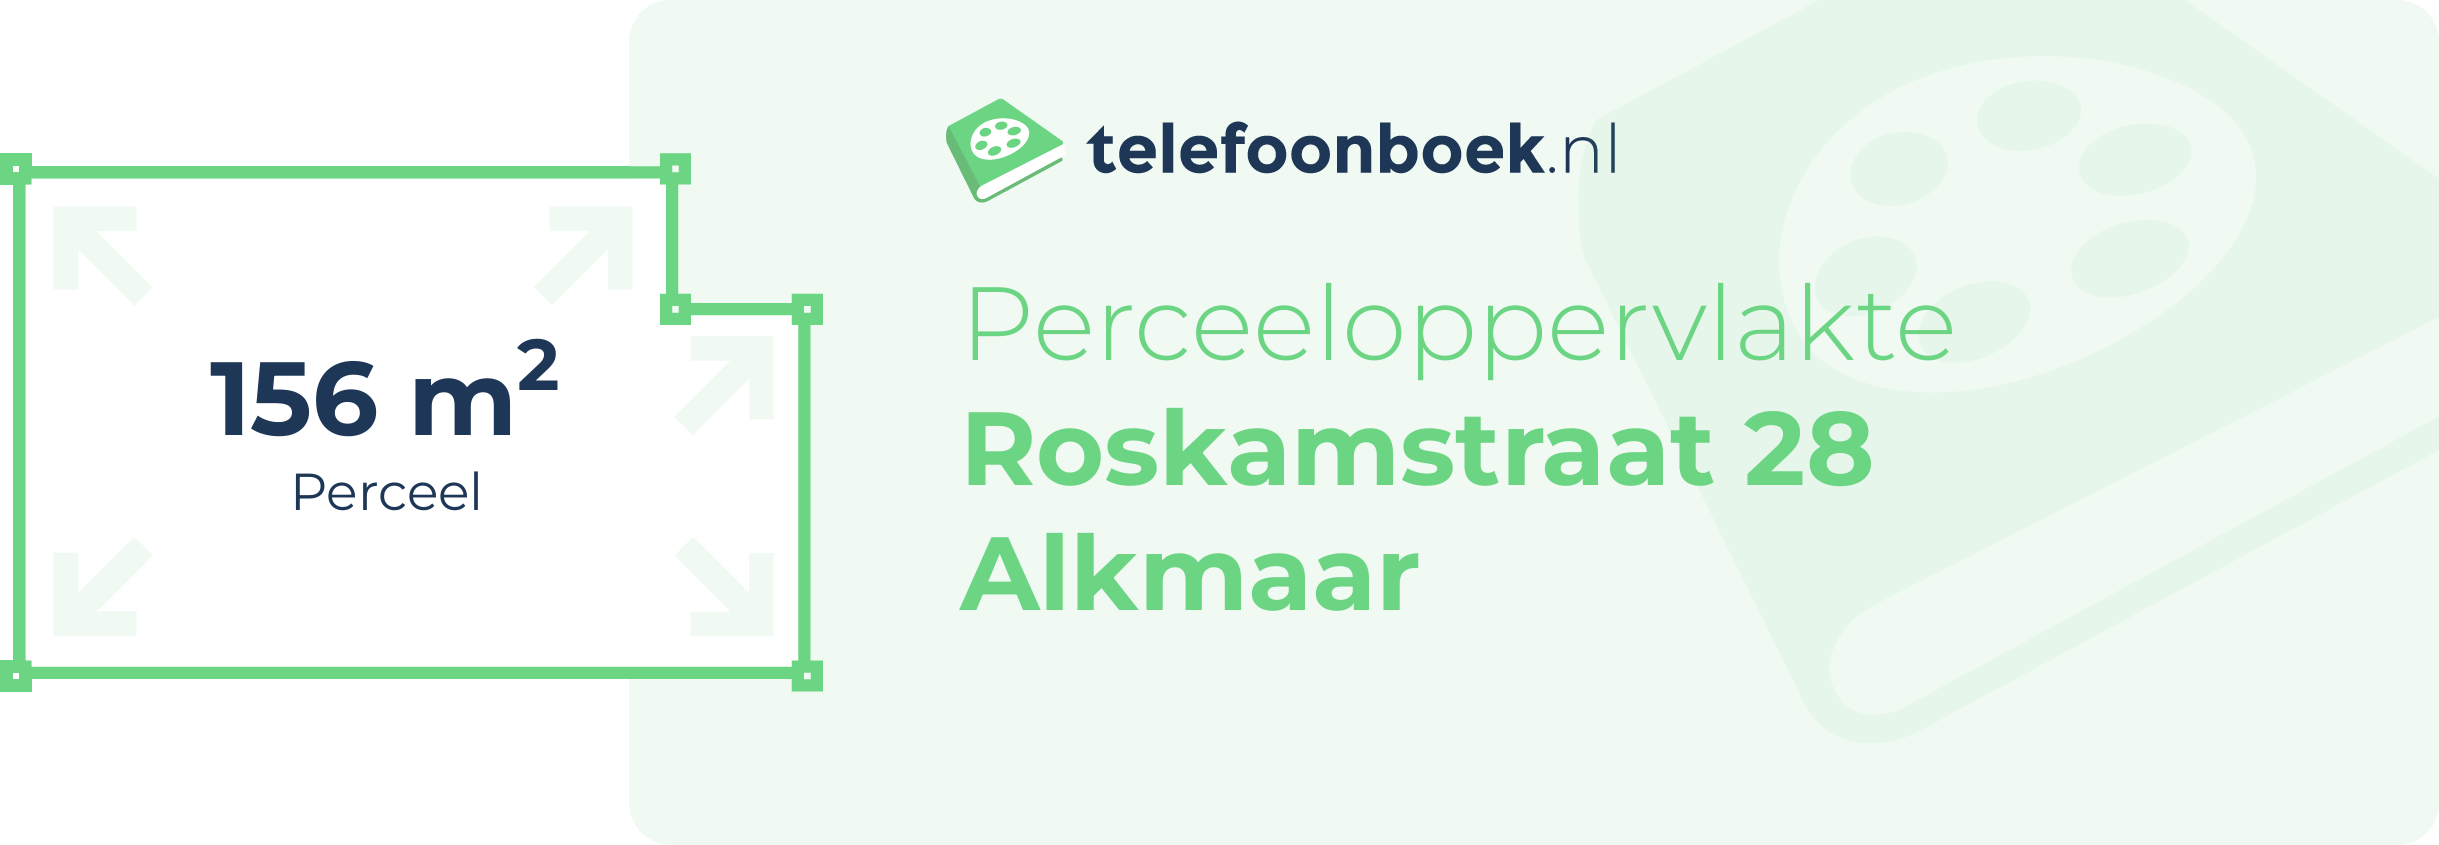 Perceeloppervlakte Roskamstraat 28 Alkmaar